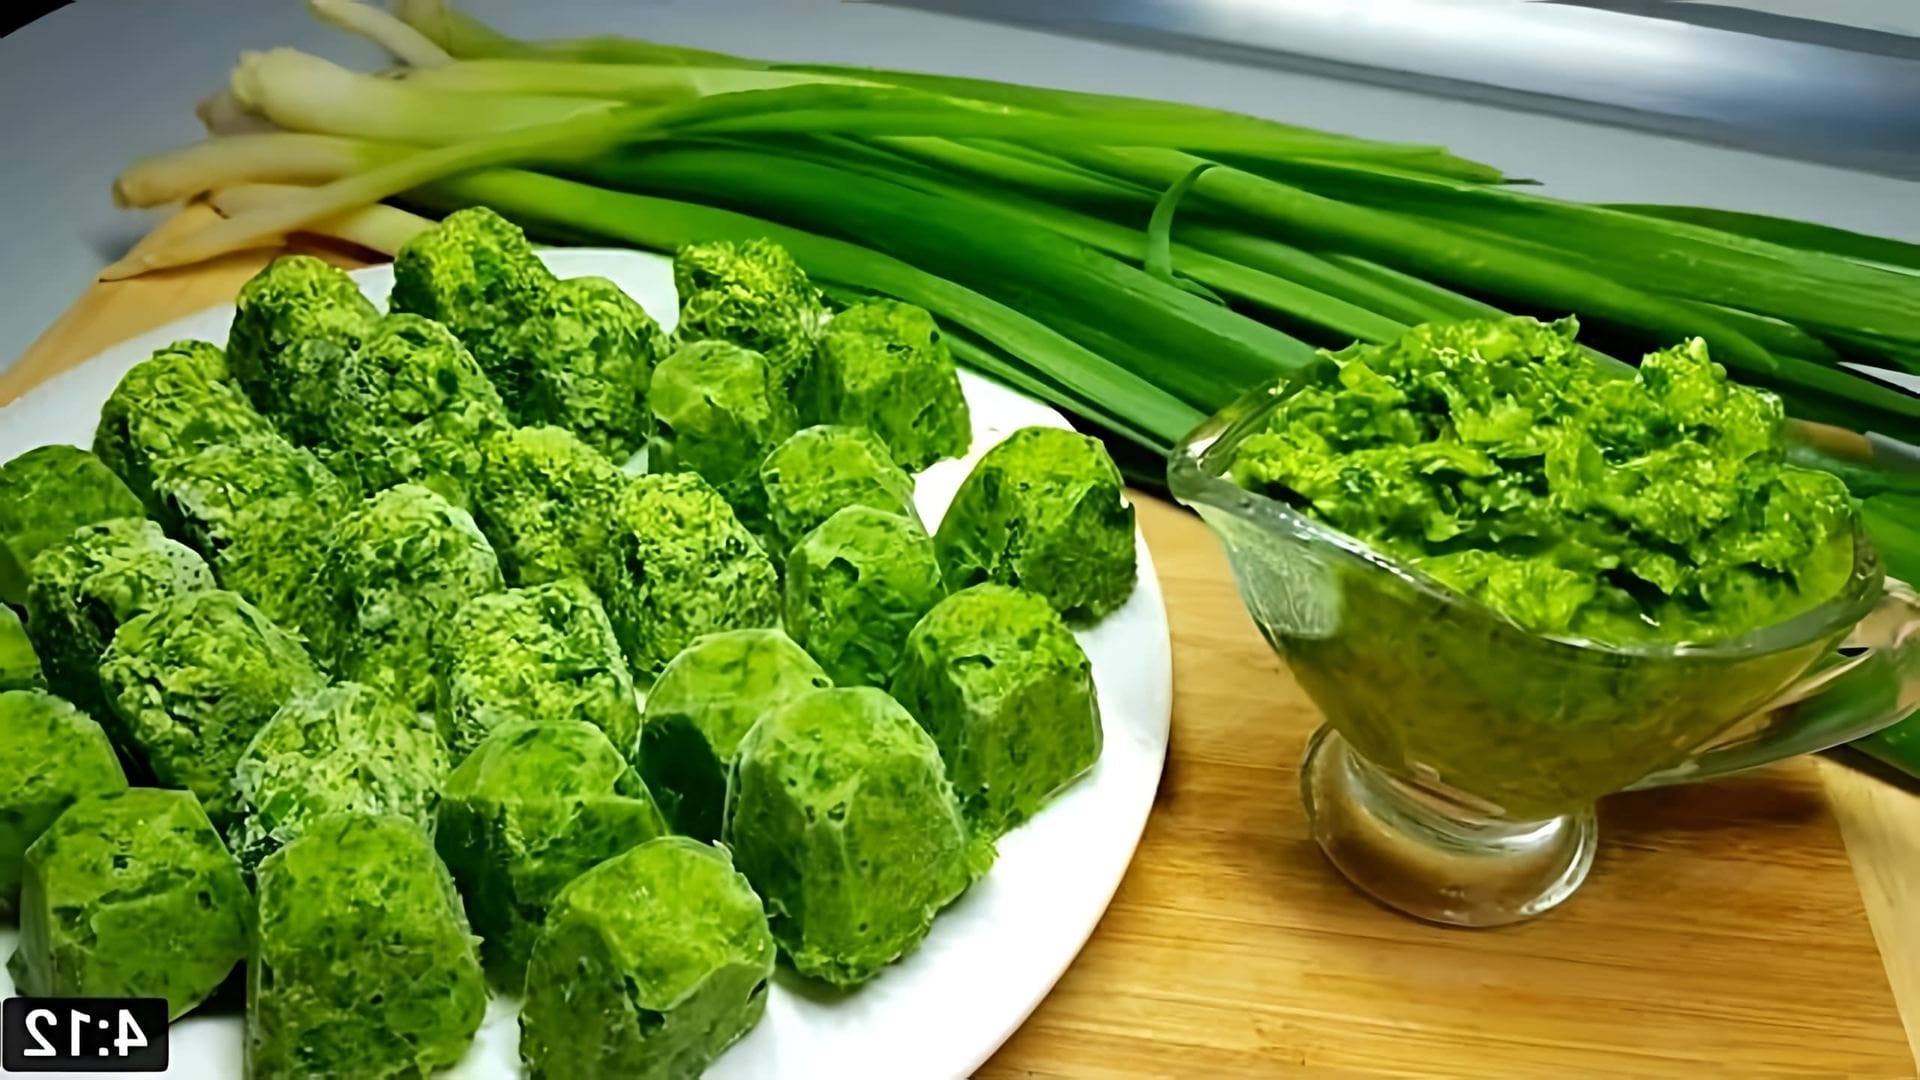 В этом видео демонстрируется процесс приготовления витаминного полезного соуса из зелени, который можно использовать в различных блюдах